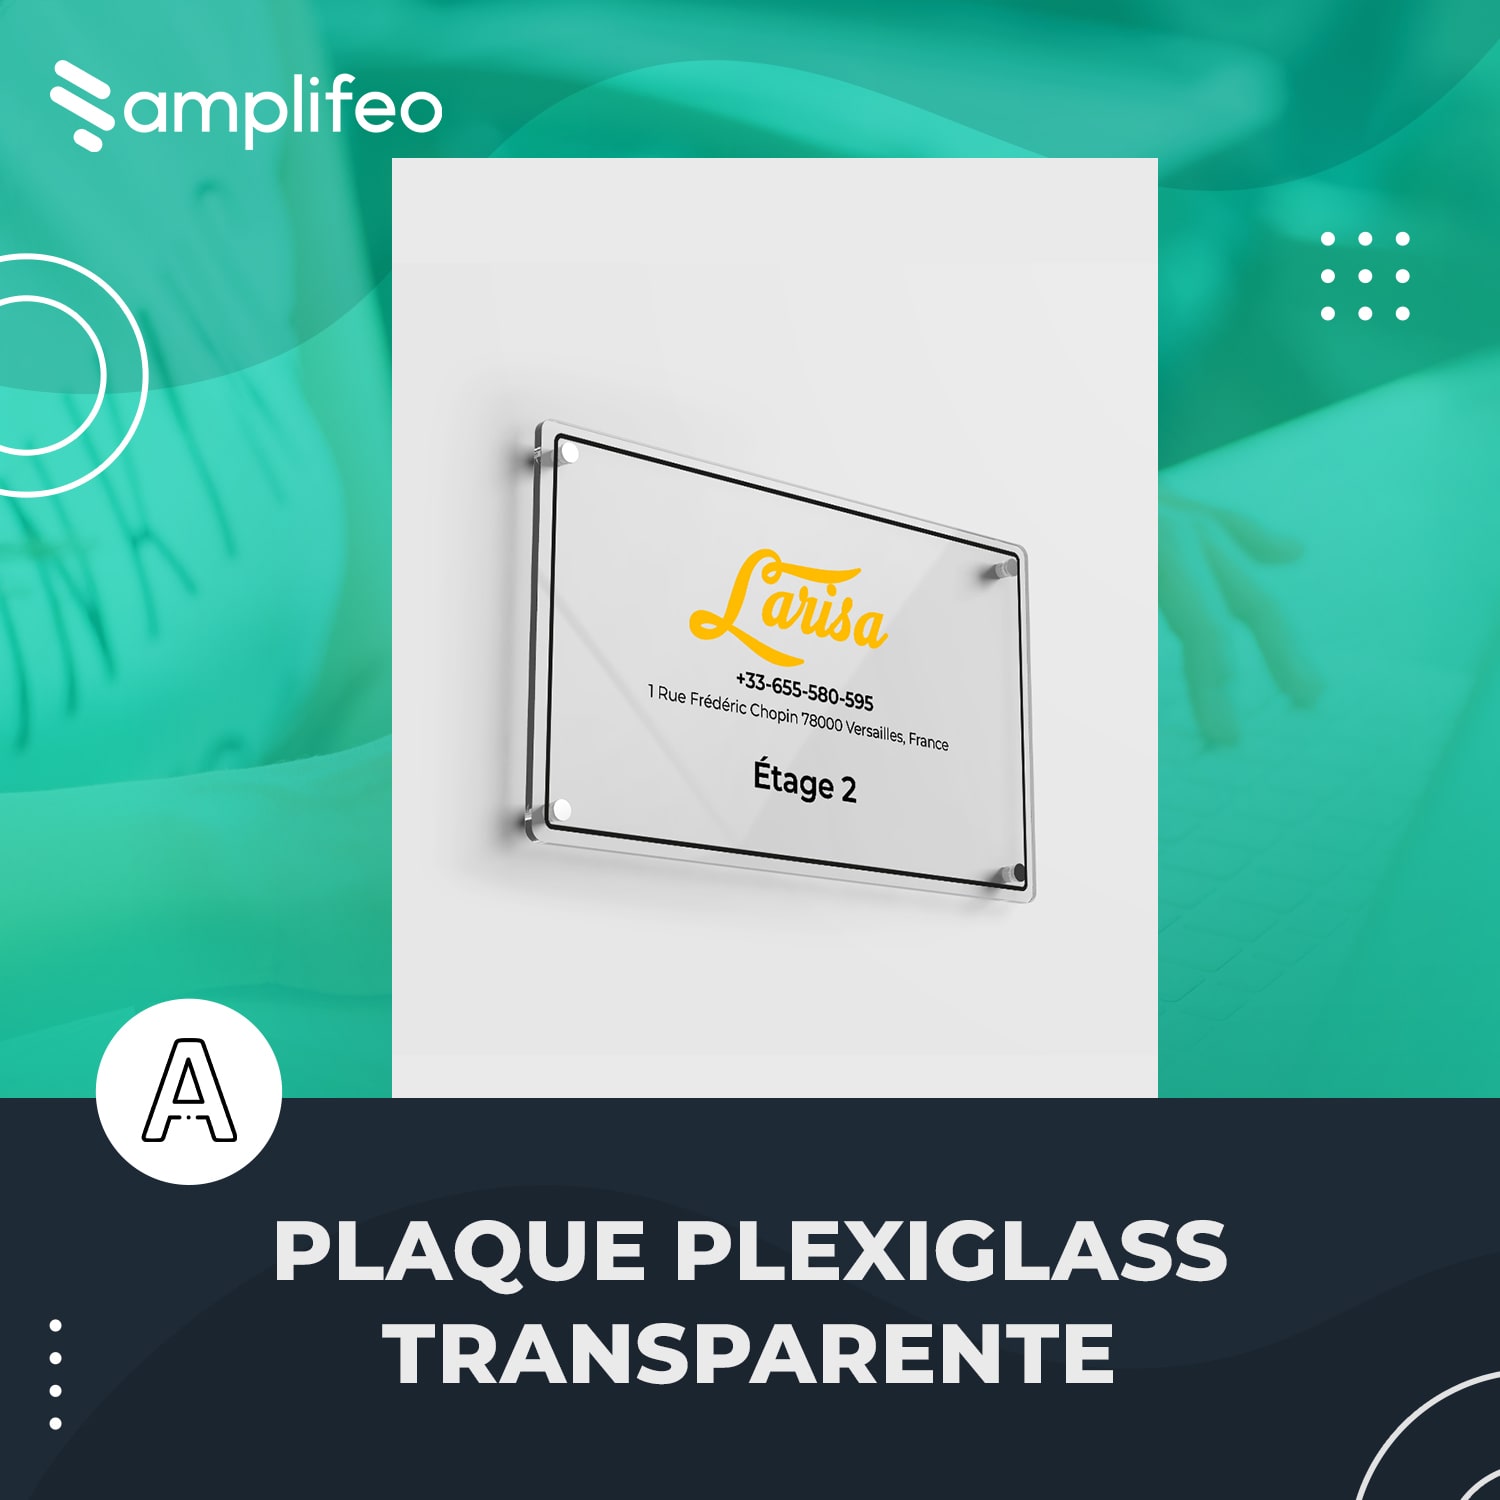 Plaque Plexiglass Transparente